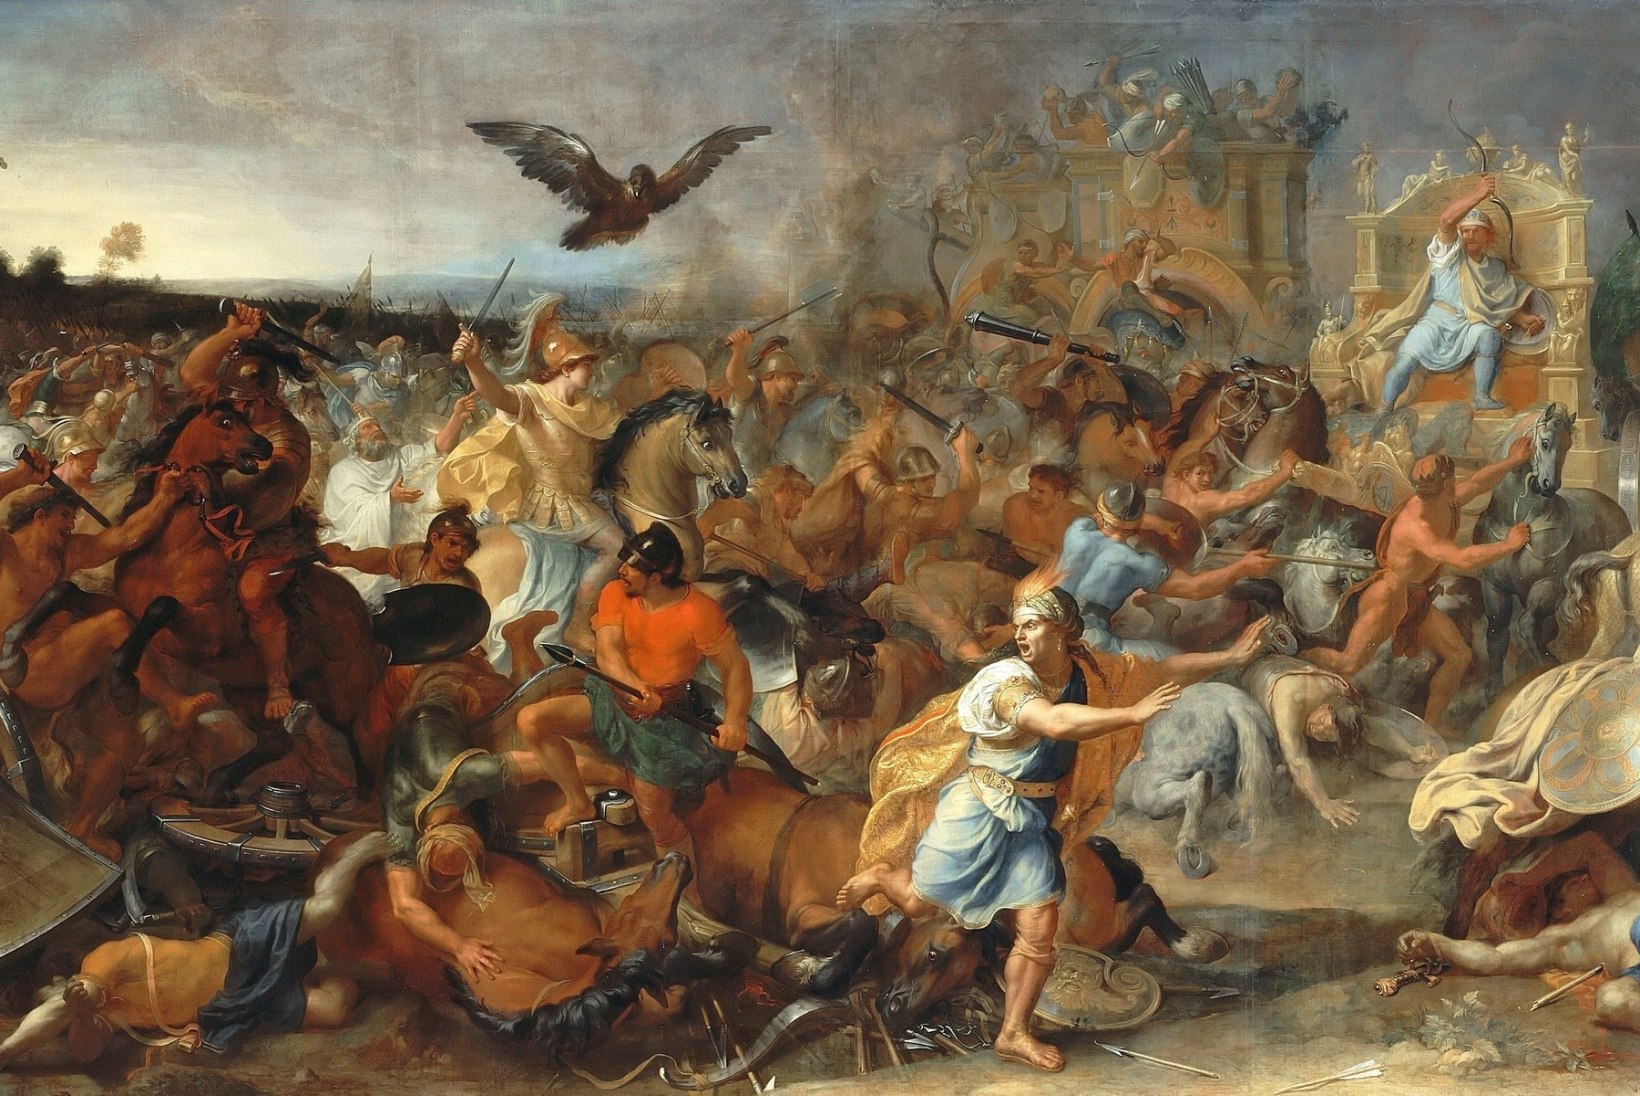 MINEVIKUHETK | 1. oktoober: Aleksander Suur lõi Gaugamela lahingus pärslaste suurt sõjaväge